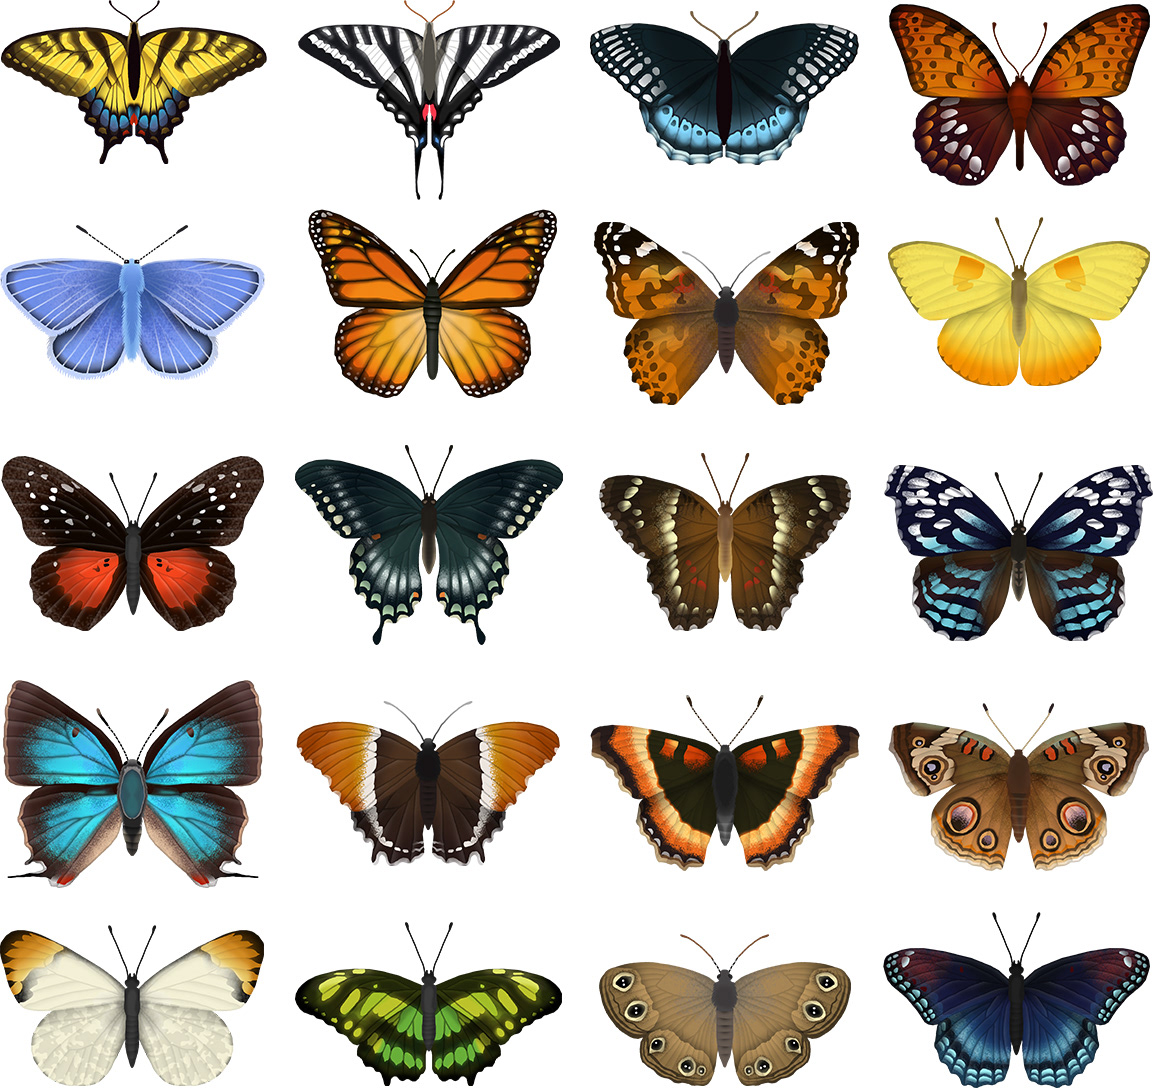 eleanor-lutz-butterfly-identification-chart